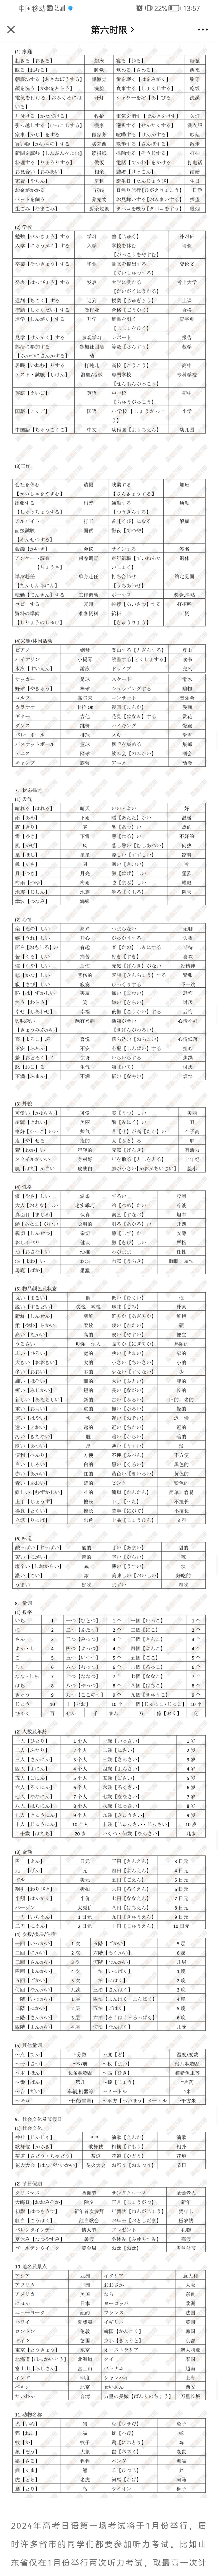 高中日语听力1000条重点词汇整理, 收藏!